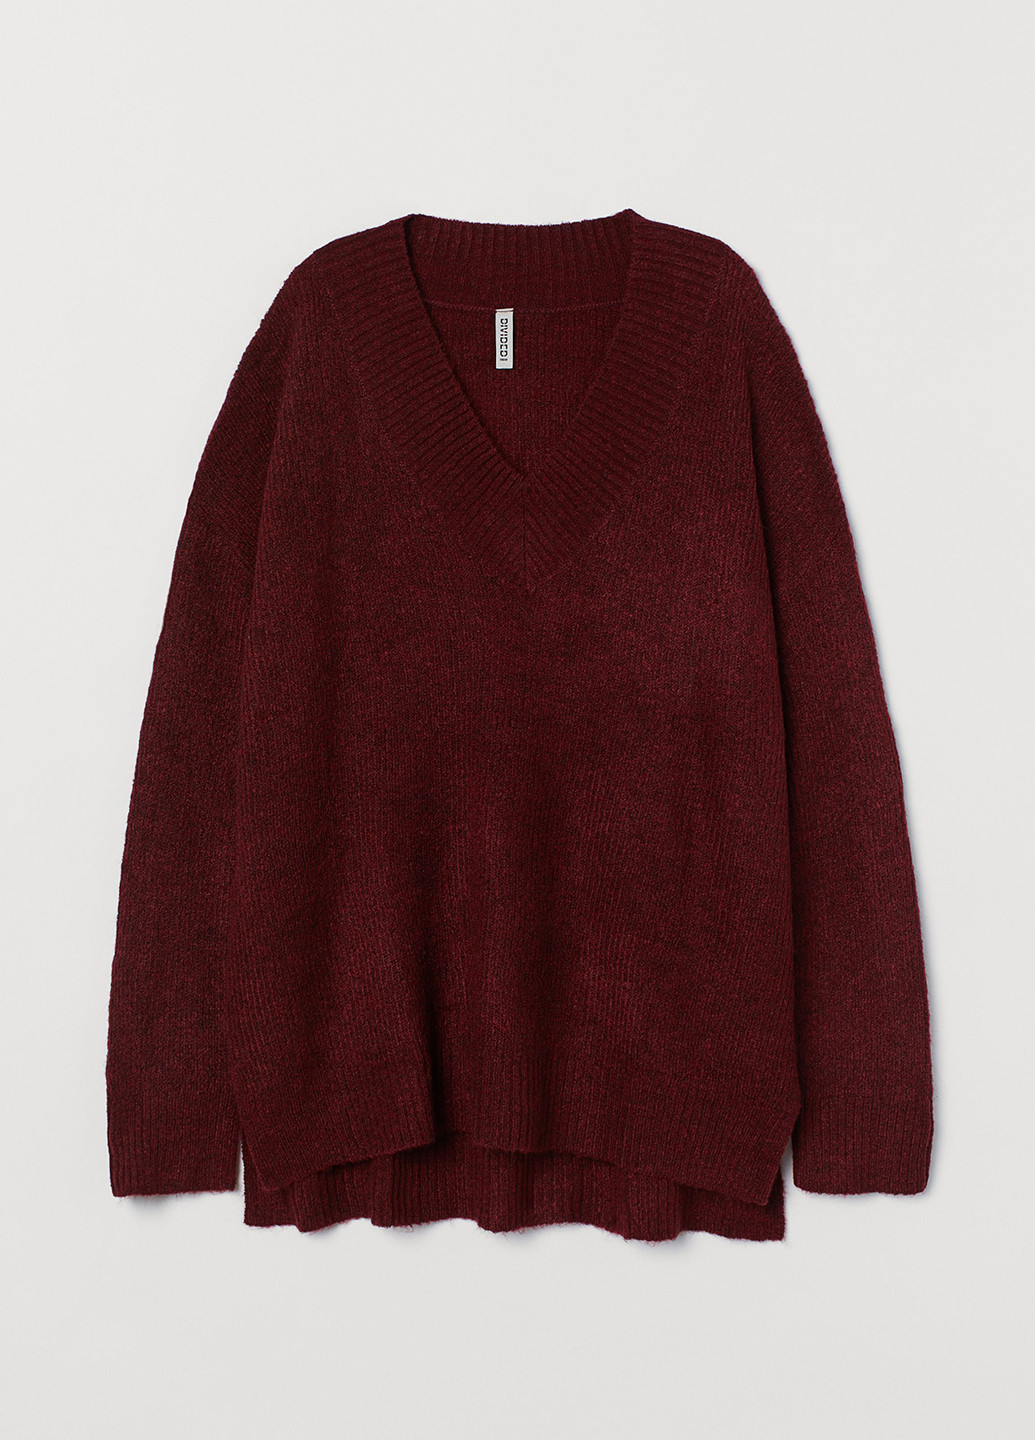 Бордовый зимний пуловер пуловер H&M